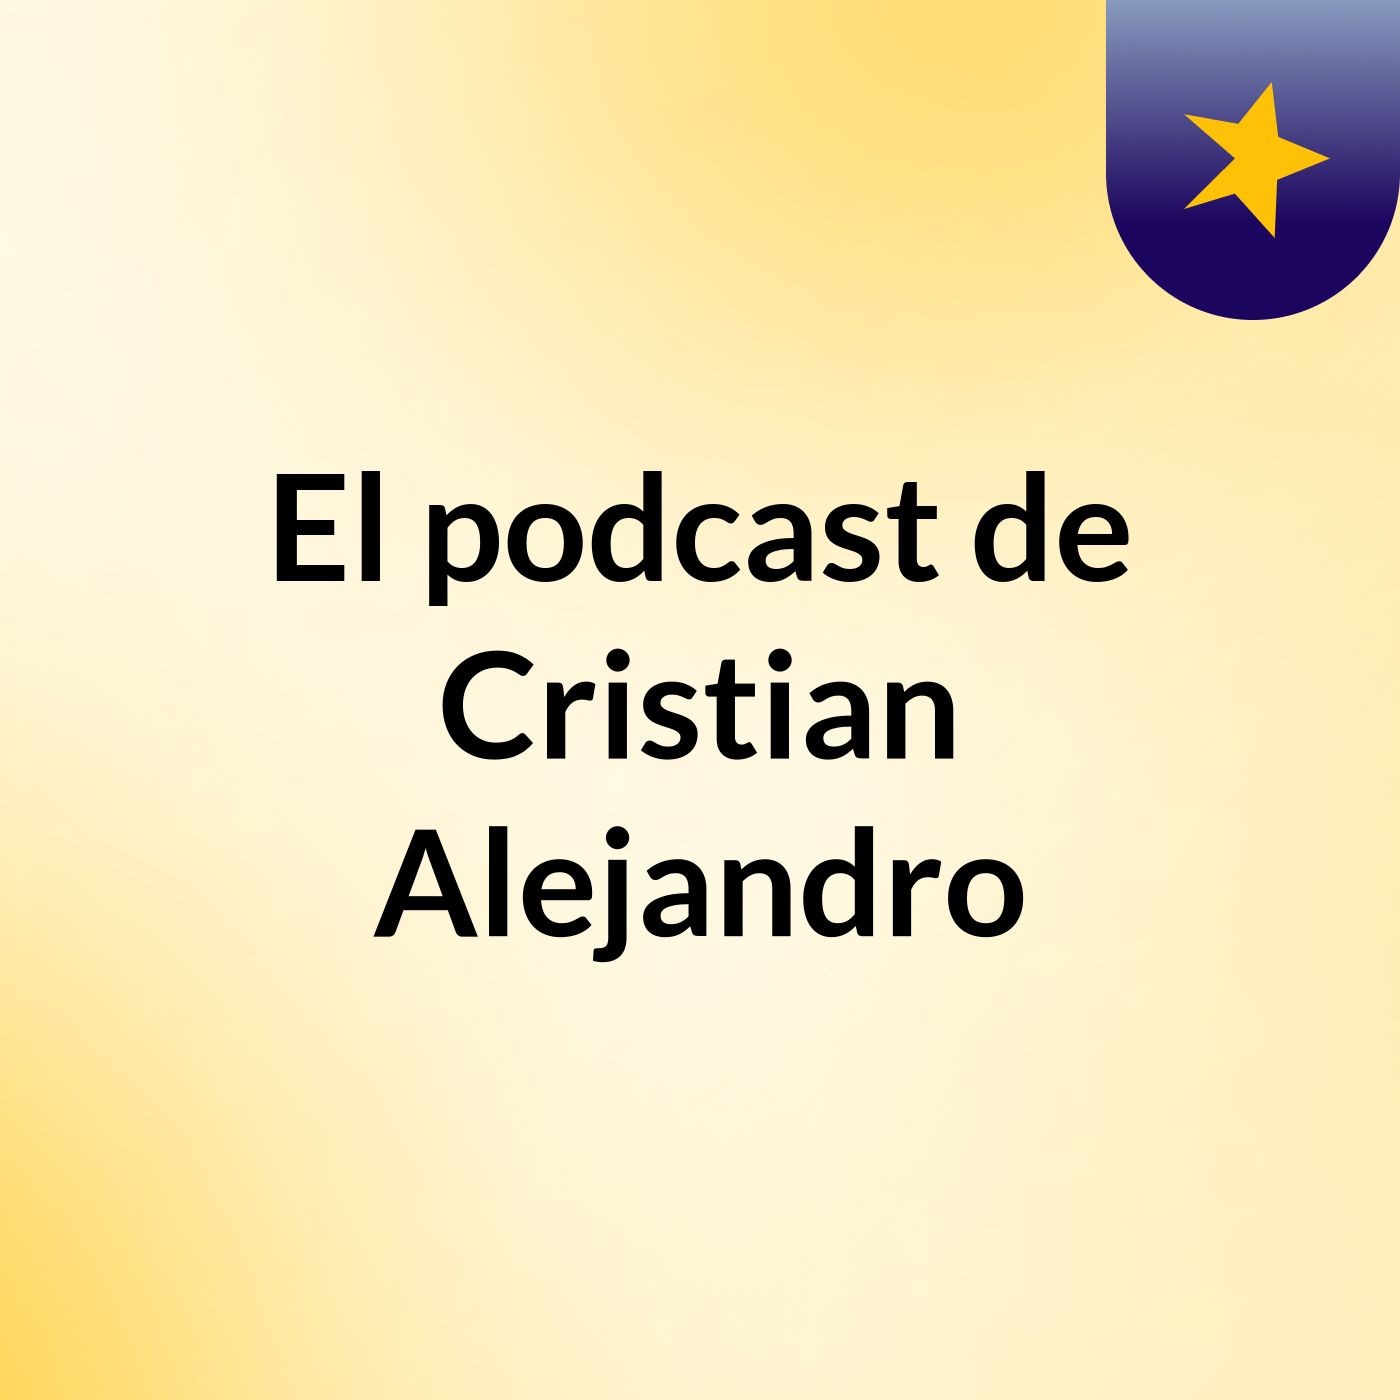 El podcast de Cristian Alejandro